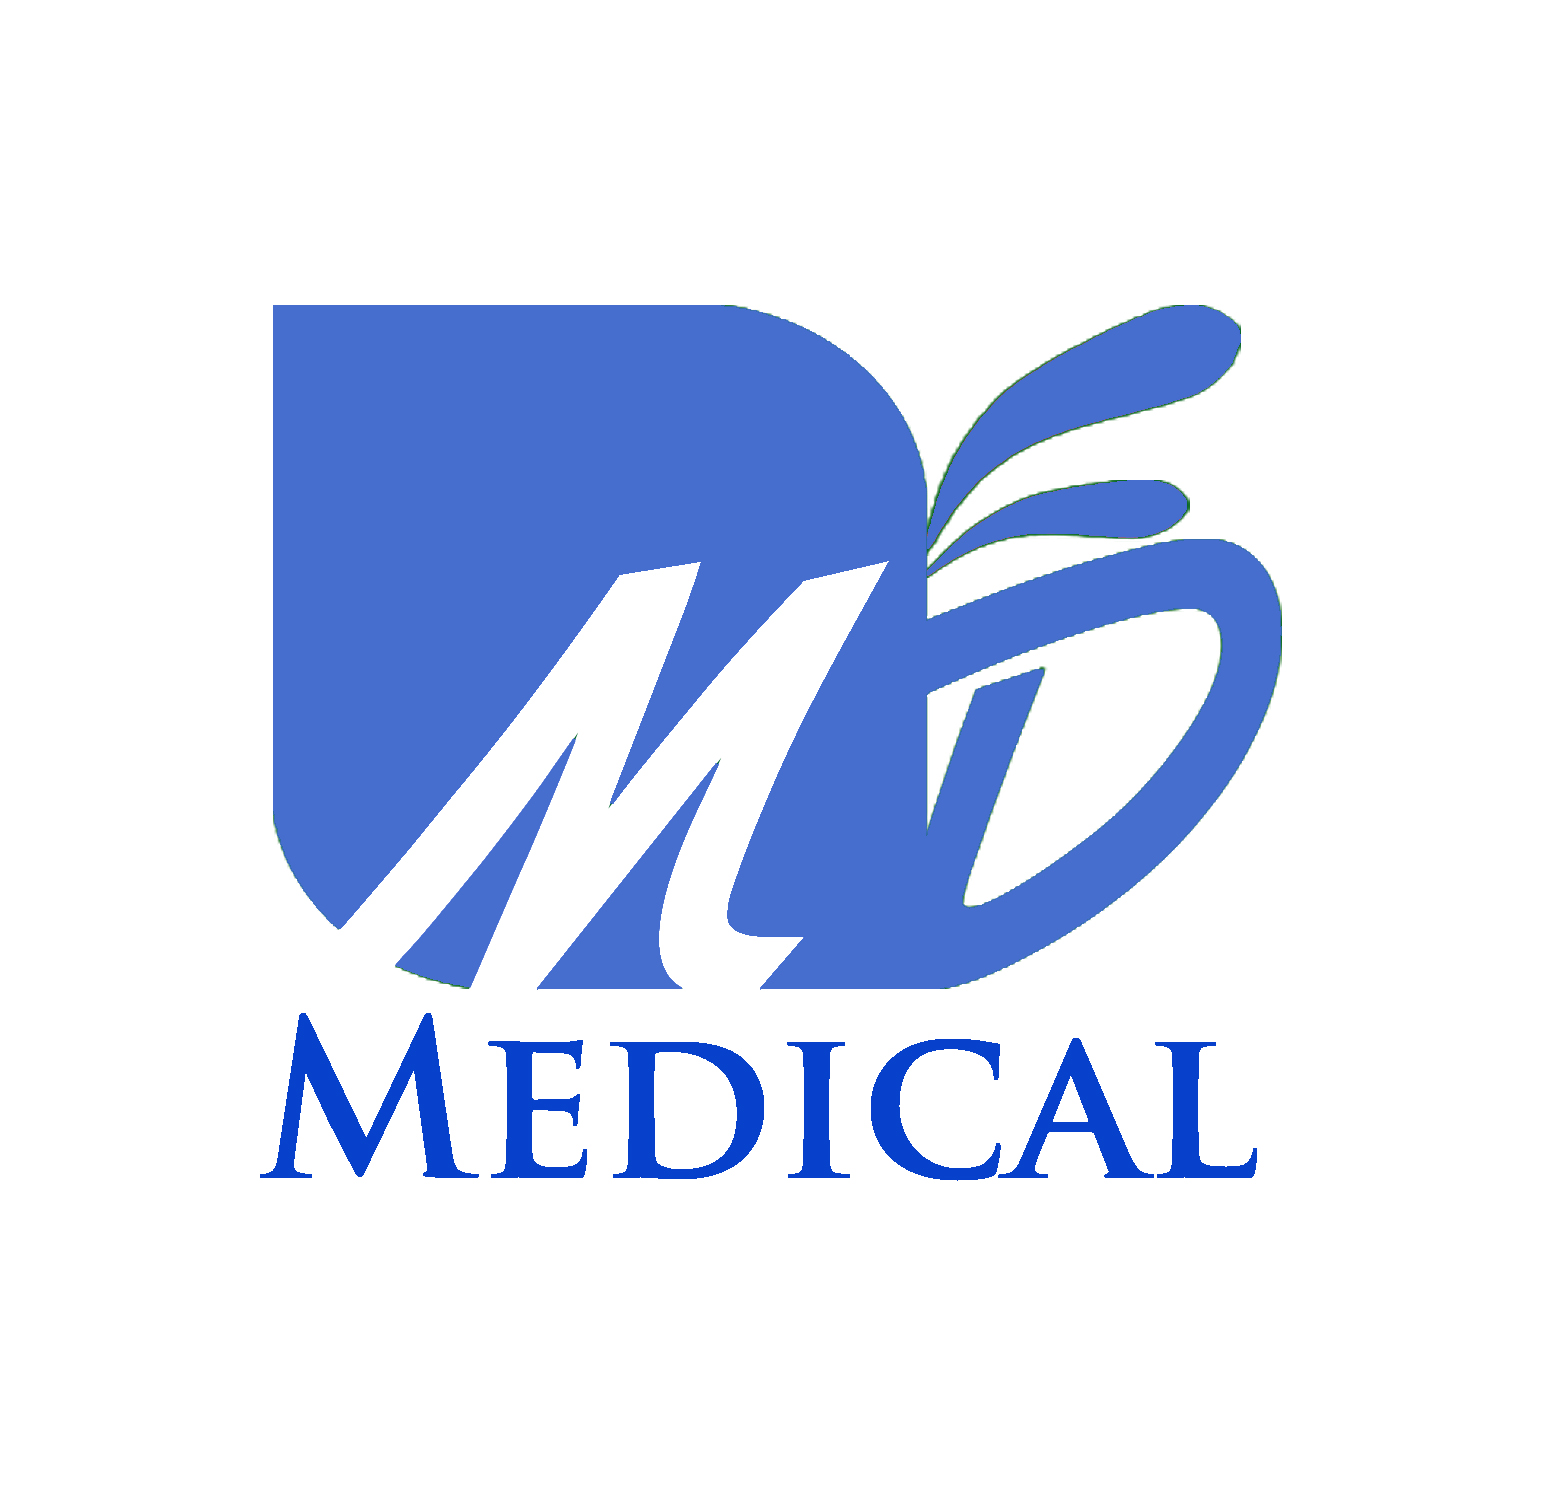 MD Medical